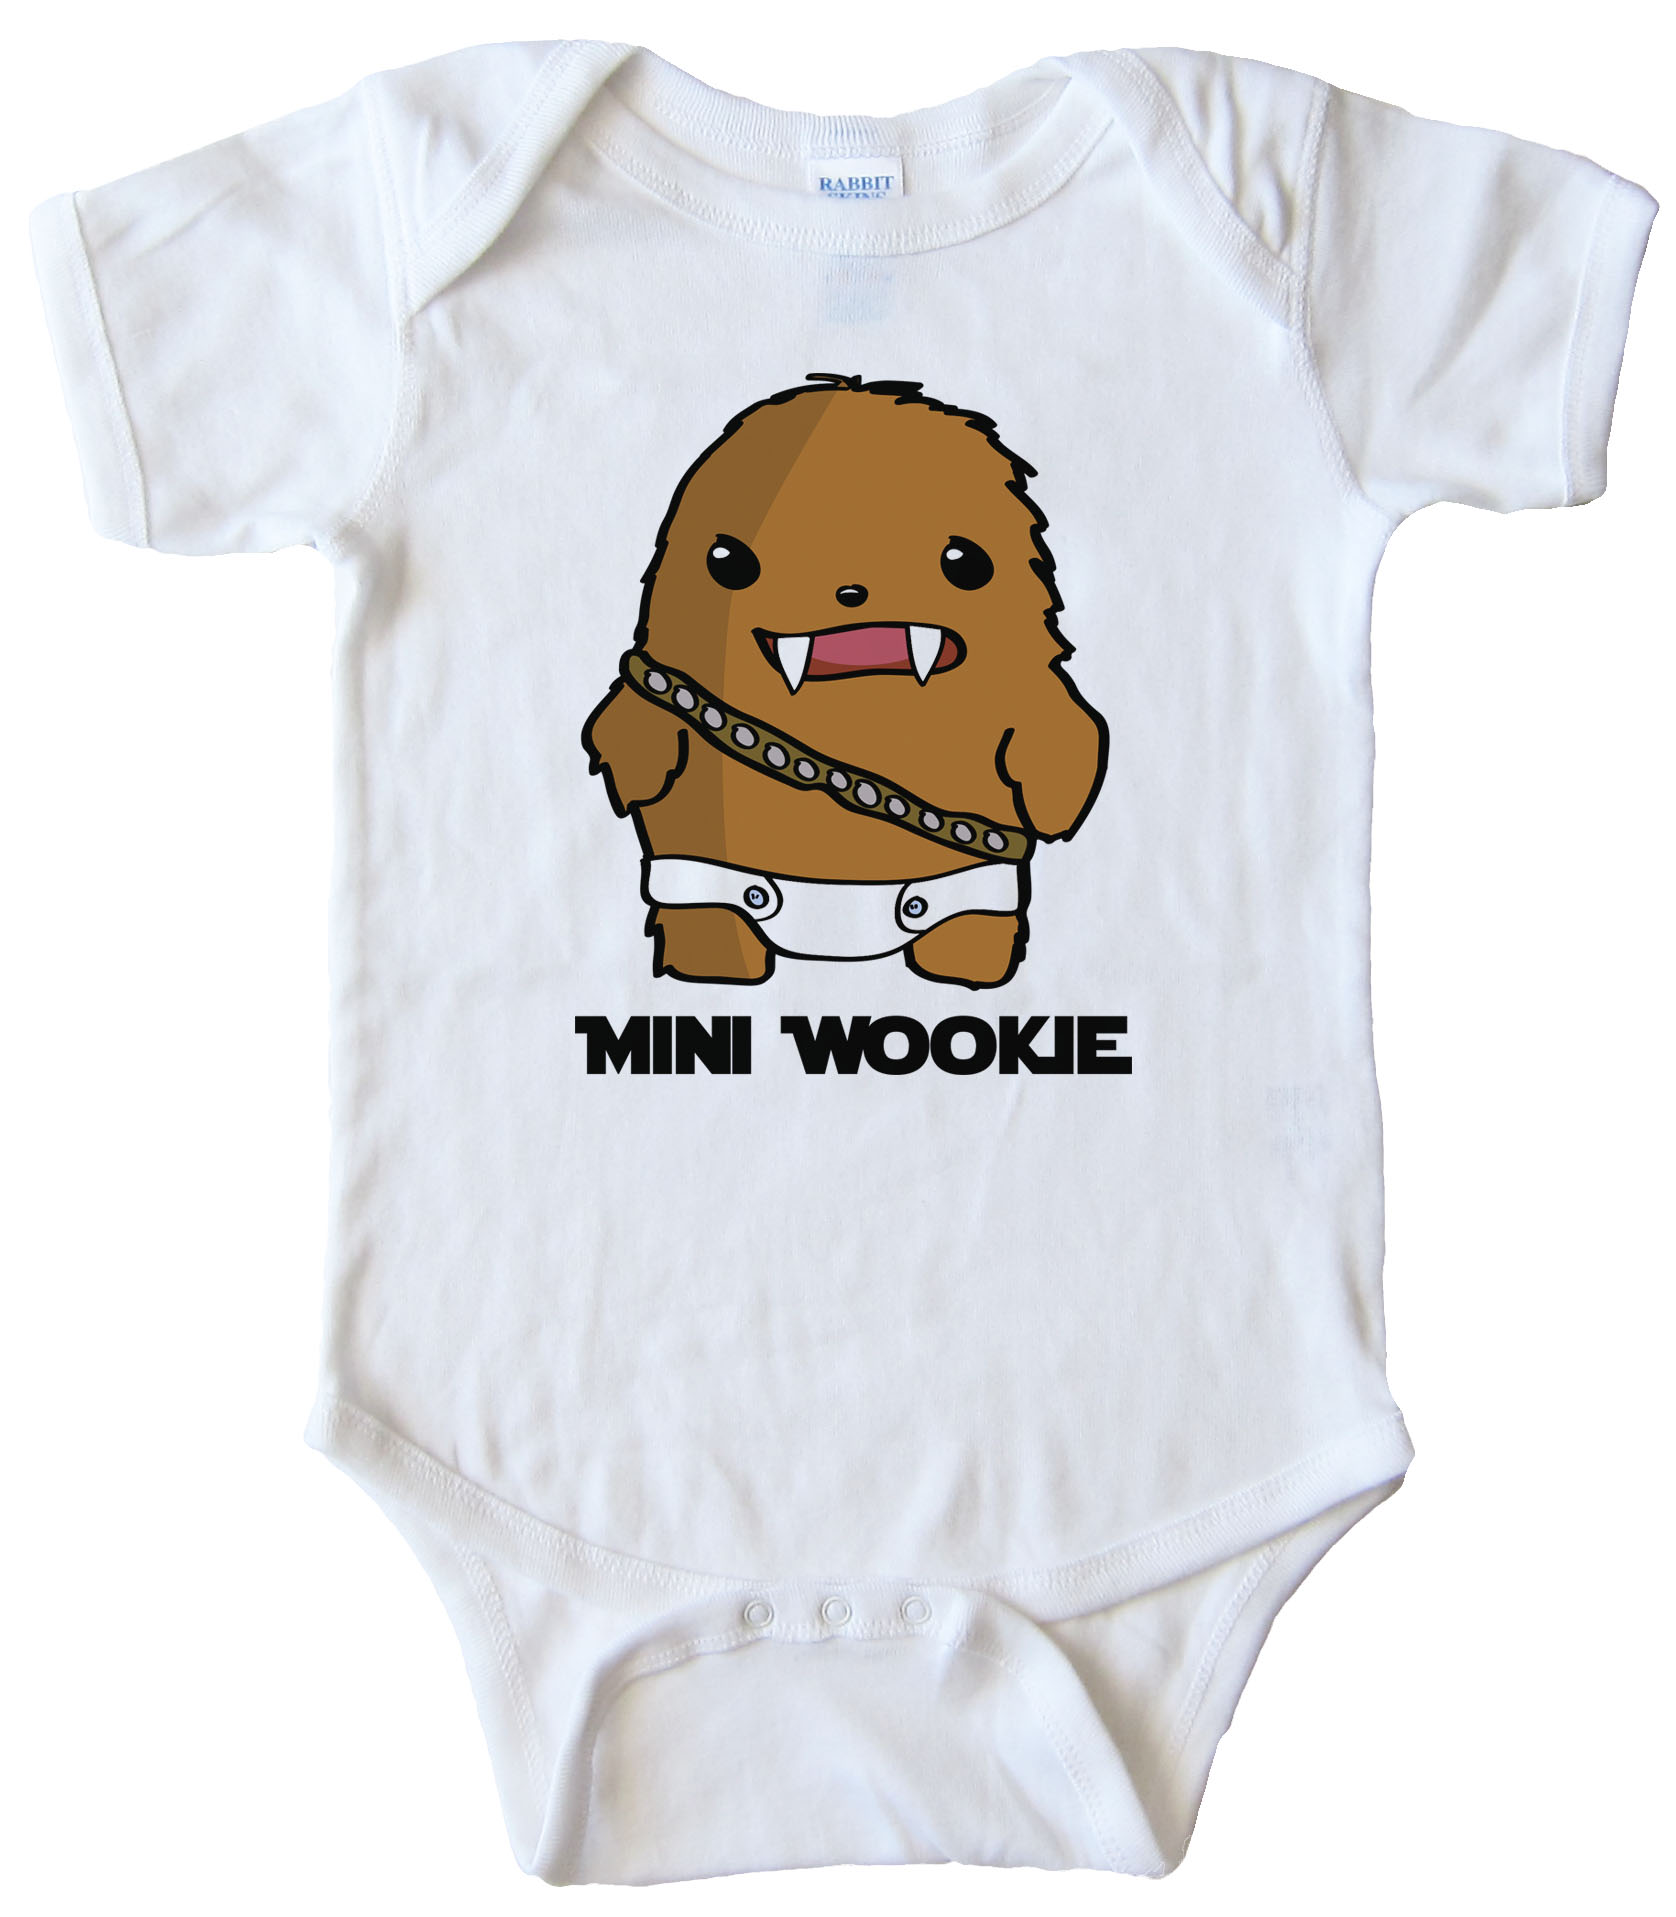 Mini Wookie Baby Chewbacca - Star Wars Bodysuit